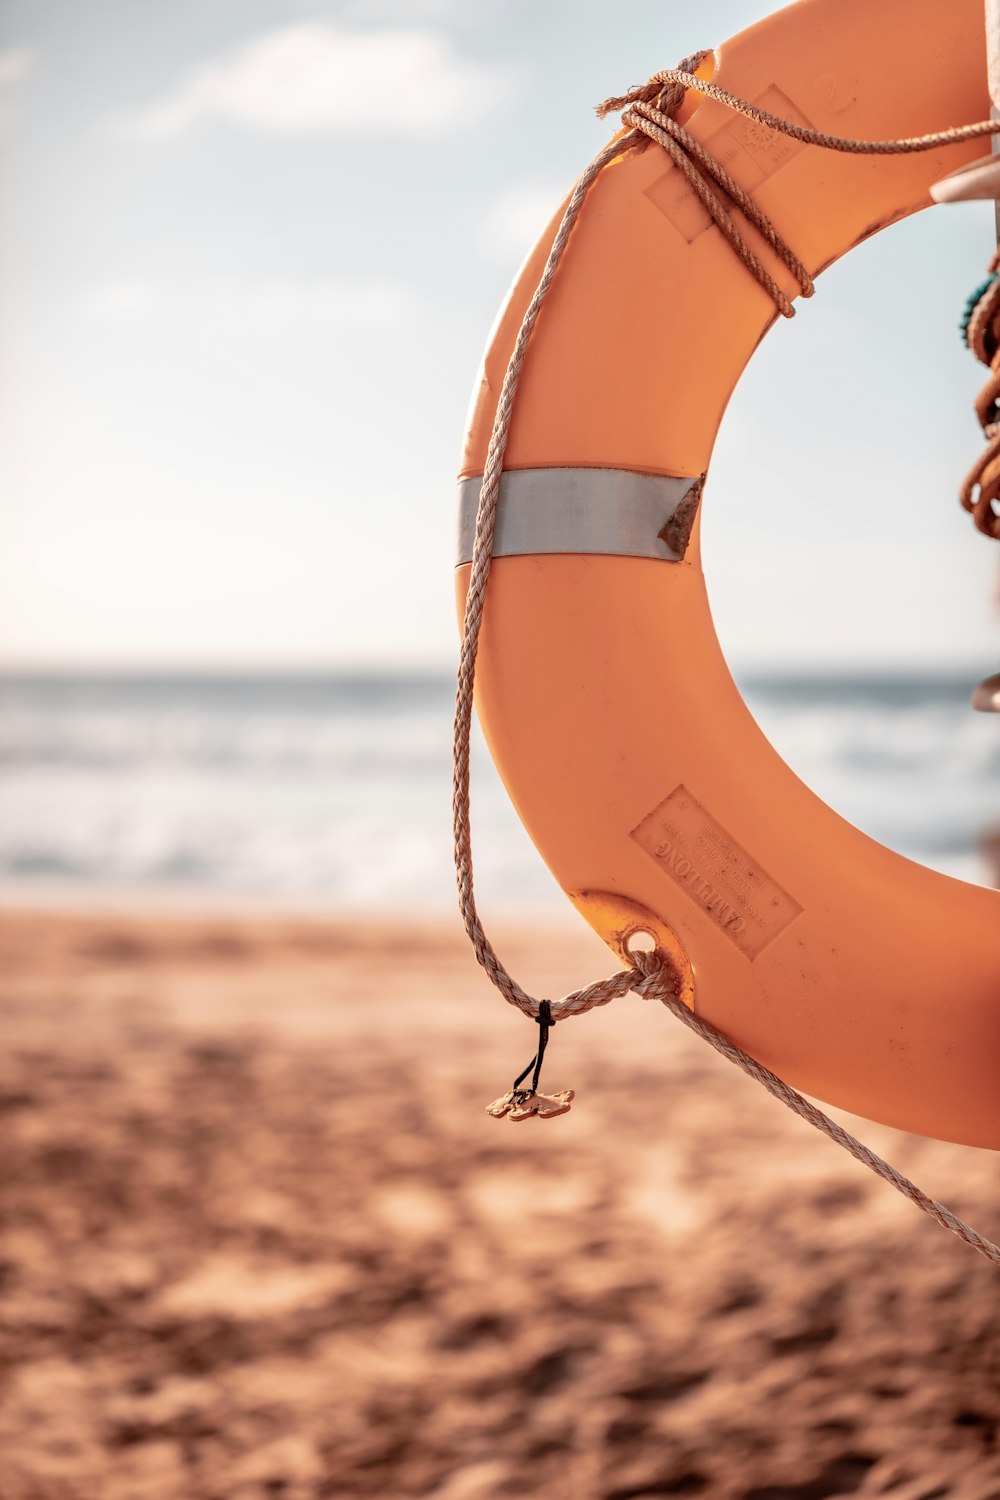 orange life buoy on beach during daytime